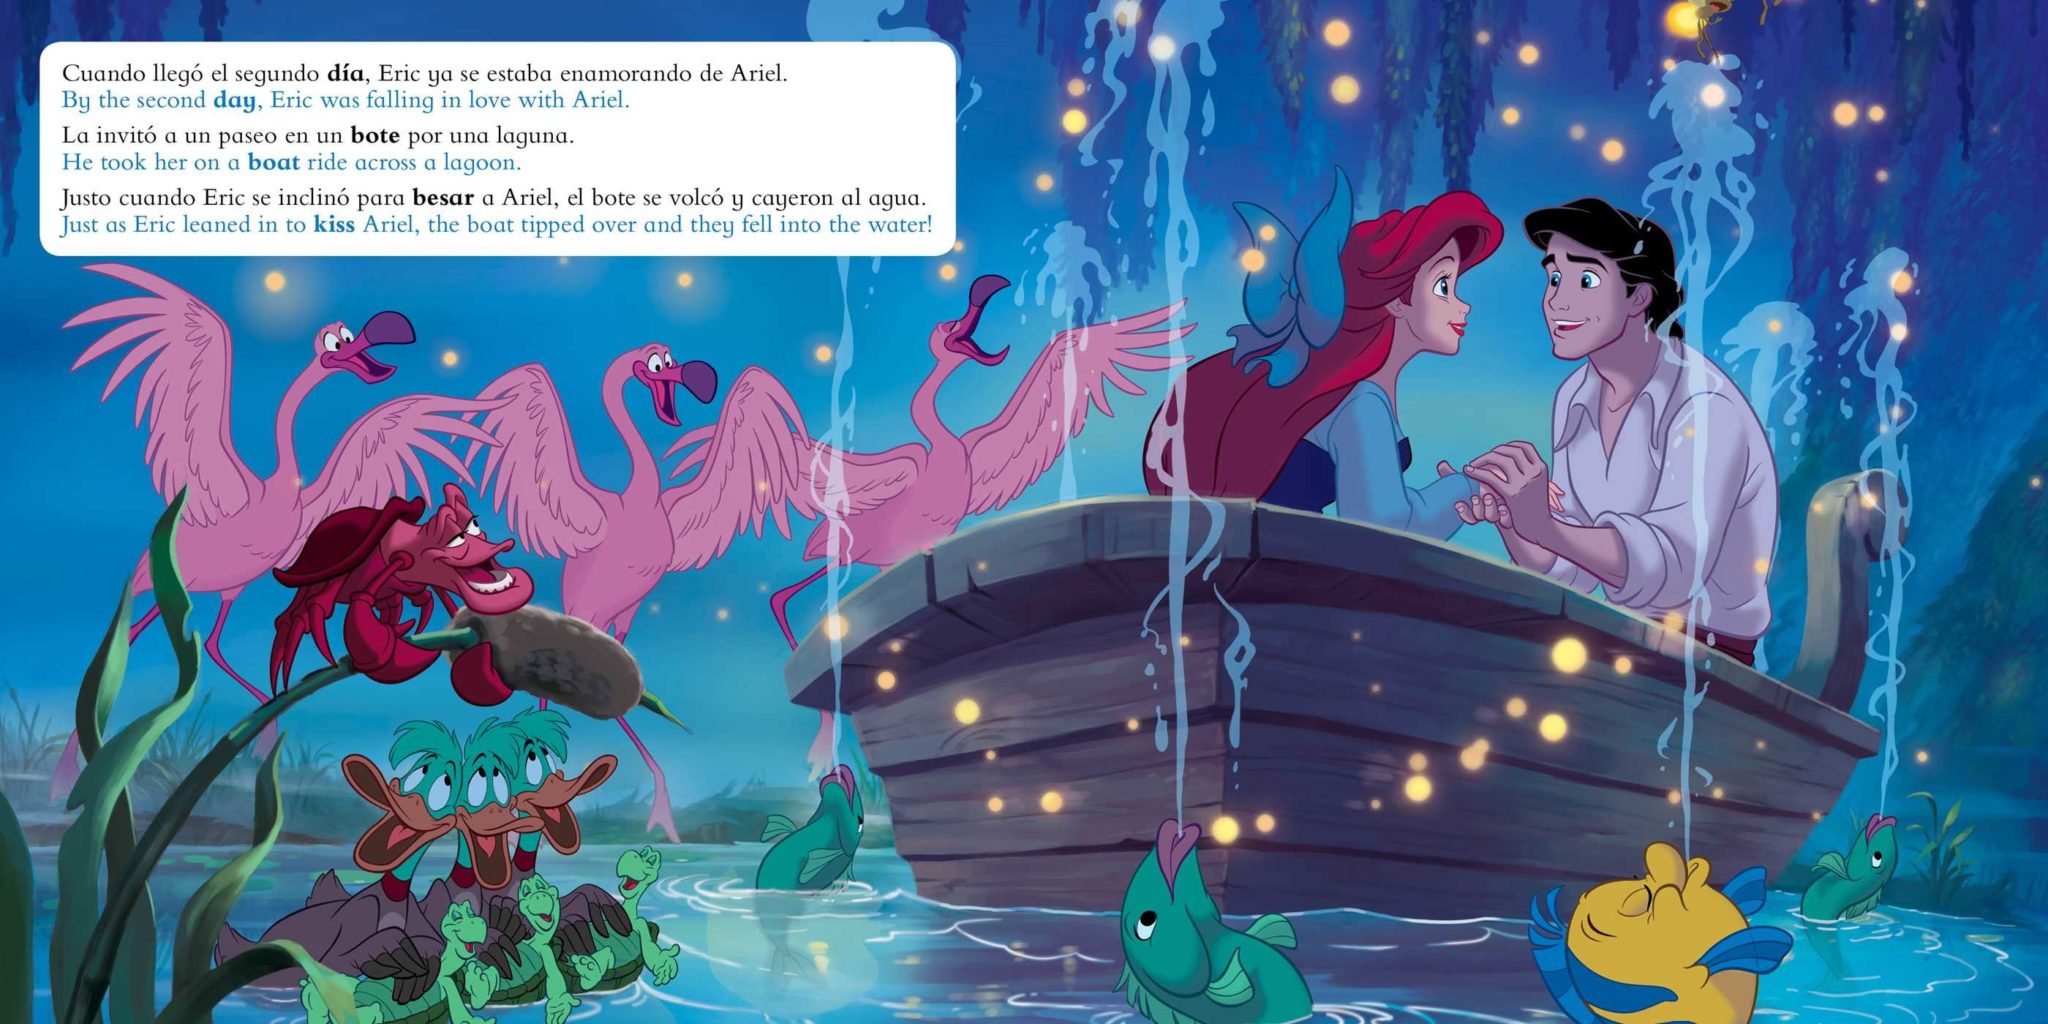 Little Mermaid Movie Storybook / Libro basado en la